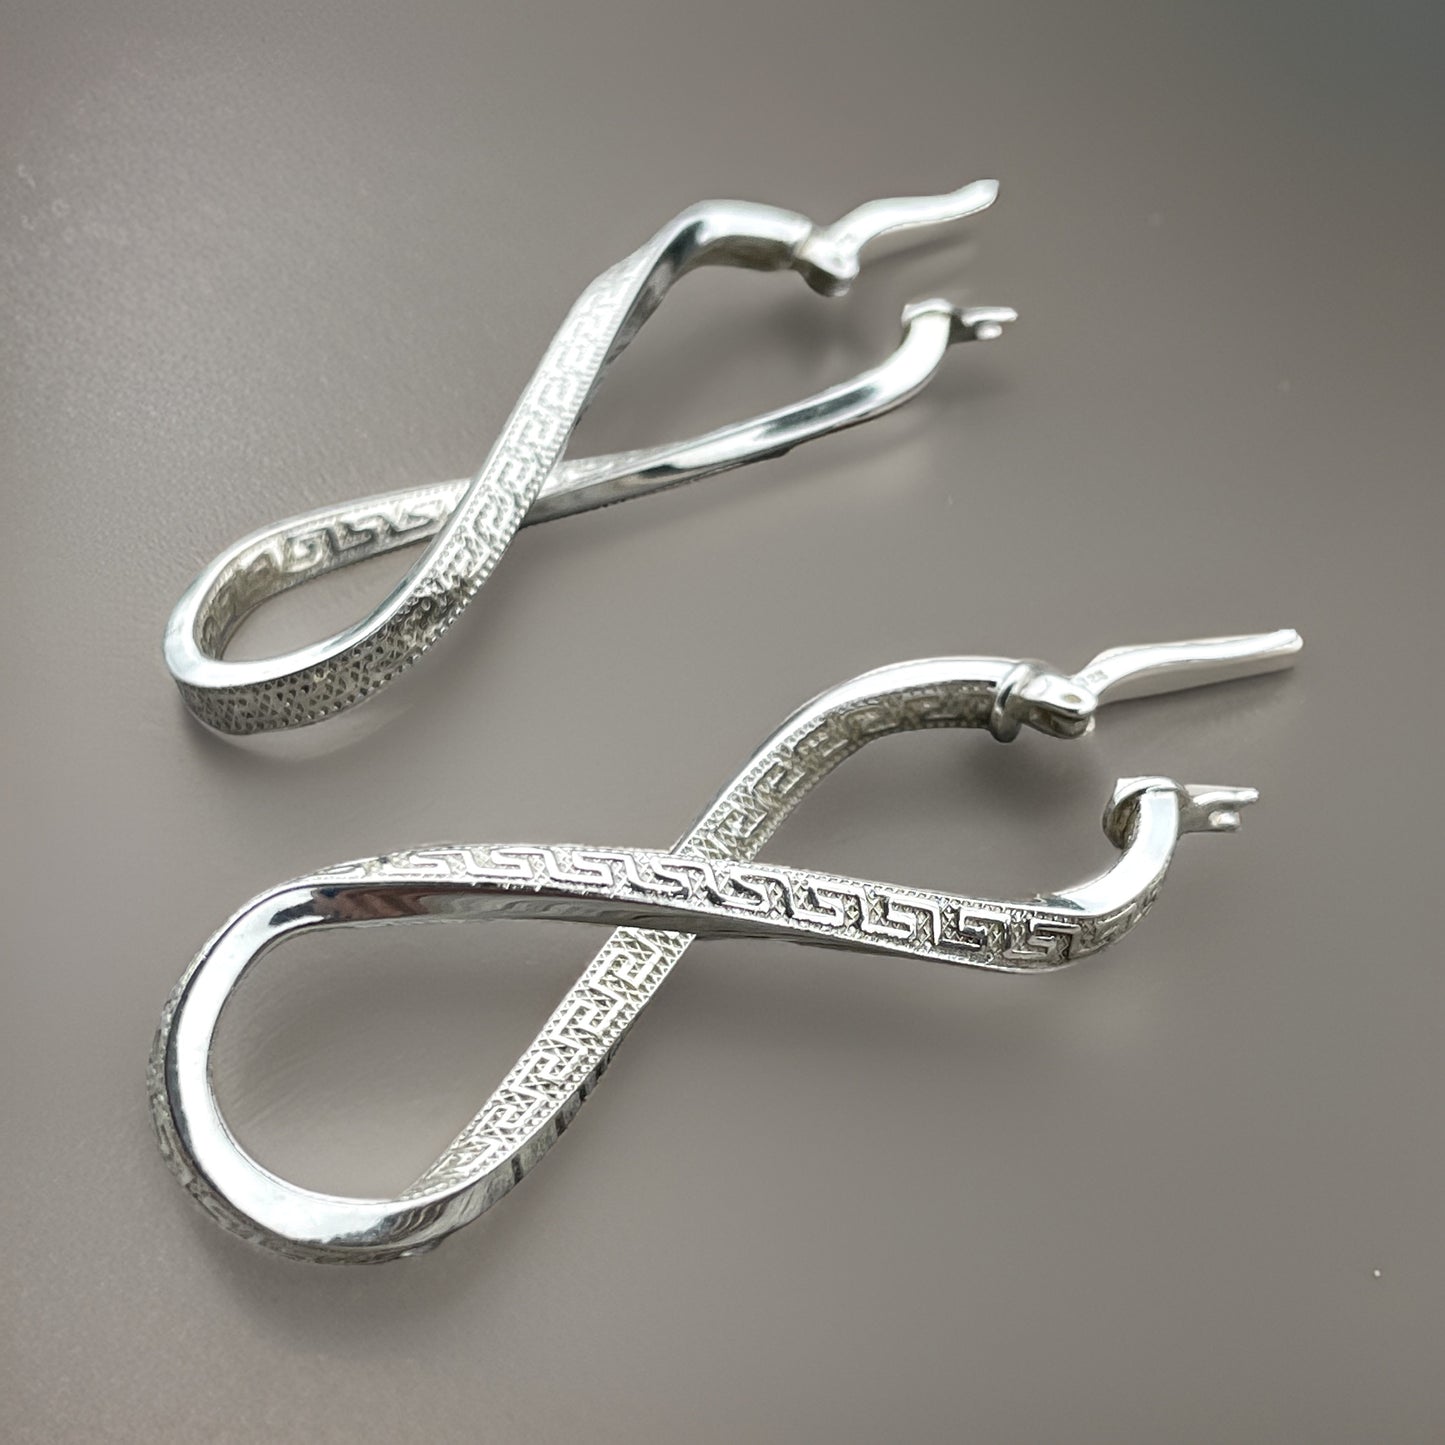 Greek Key Pattern Infinity Symbol Dangle Earrings.